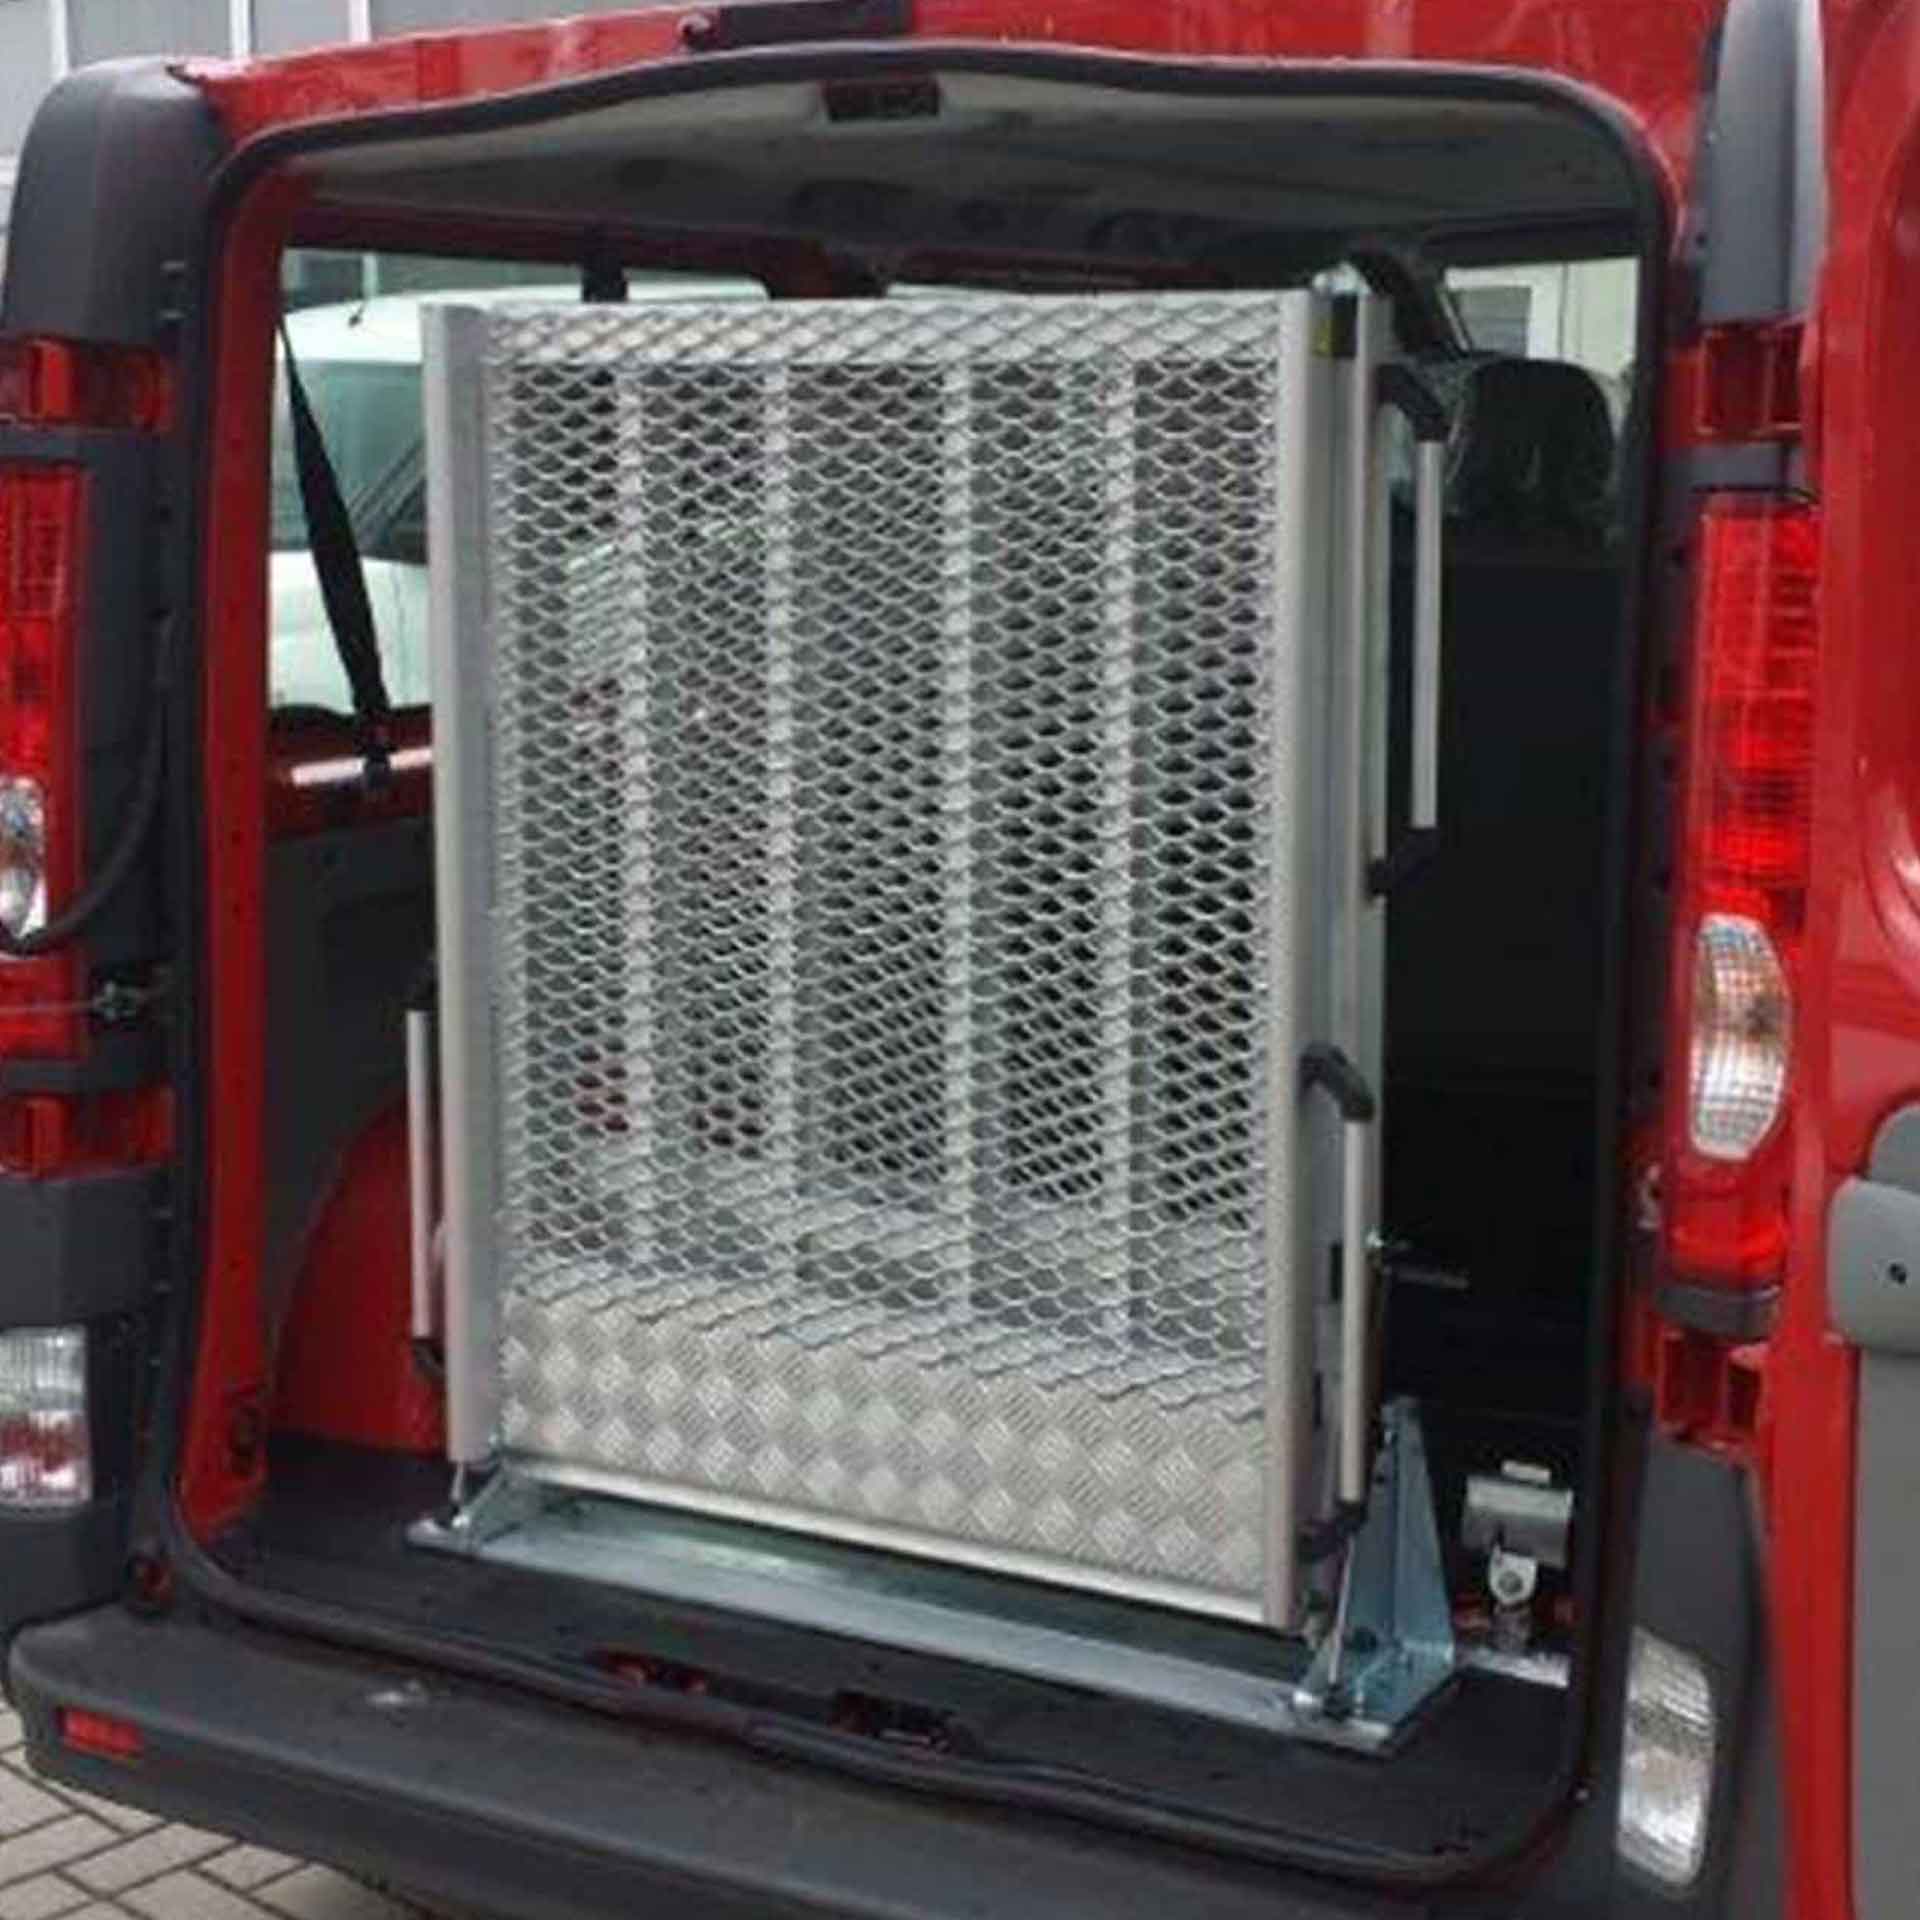 Serie EASY | Fest montierte Rollstuhlrampe für Kleinbusse - Abmessung 2.000 x 800 mm, 3-fach faltbar